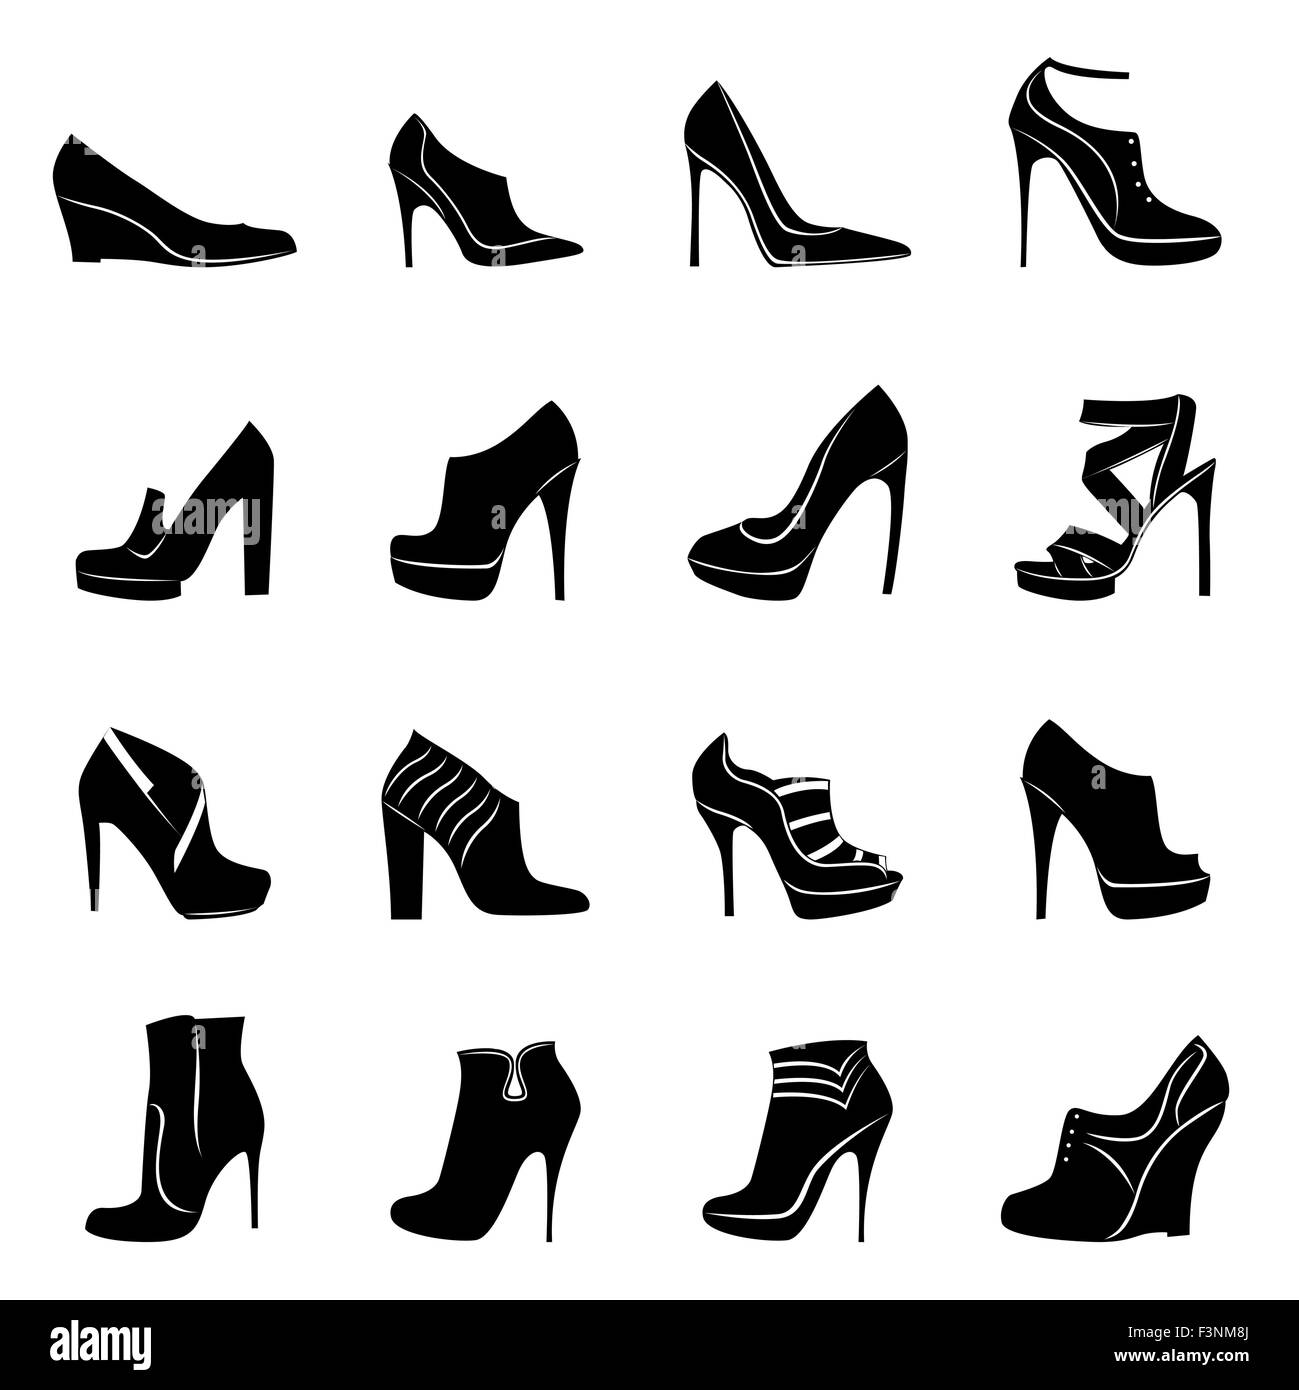 Ensemble de seize différents modèles de chaussures femmes élégant, noir et  blanc, dessin à la main silhouette vector illustration Image Vectorielle  Stock - Alamy